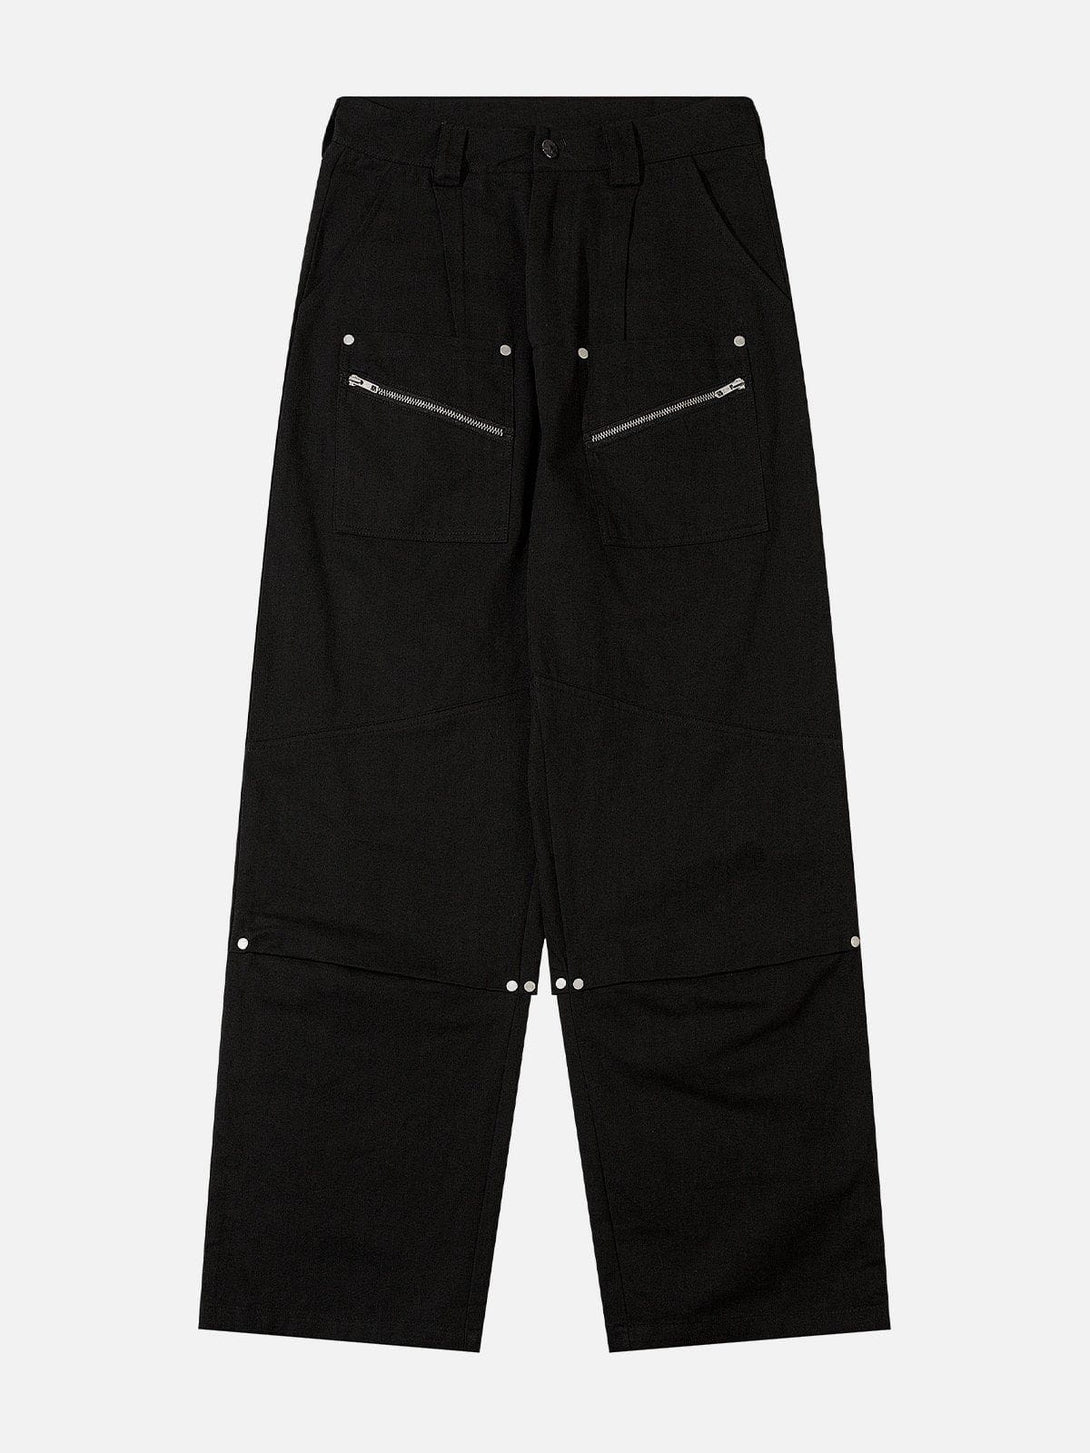 Levefly - Vintage Patchwork Zipper Design Pants - Streetwear Fashion - levefly.com